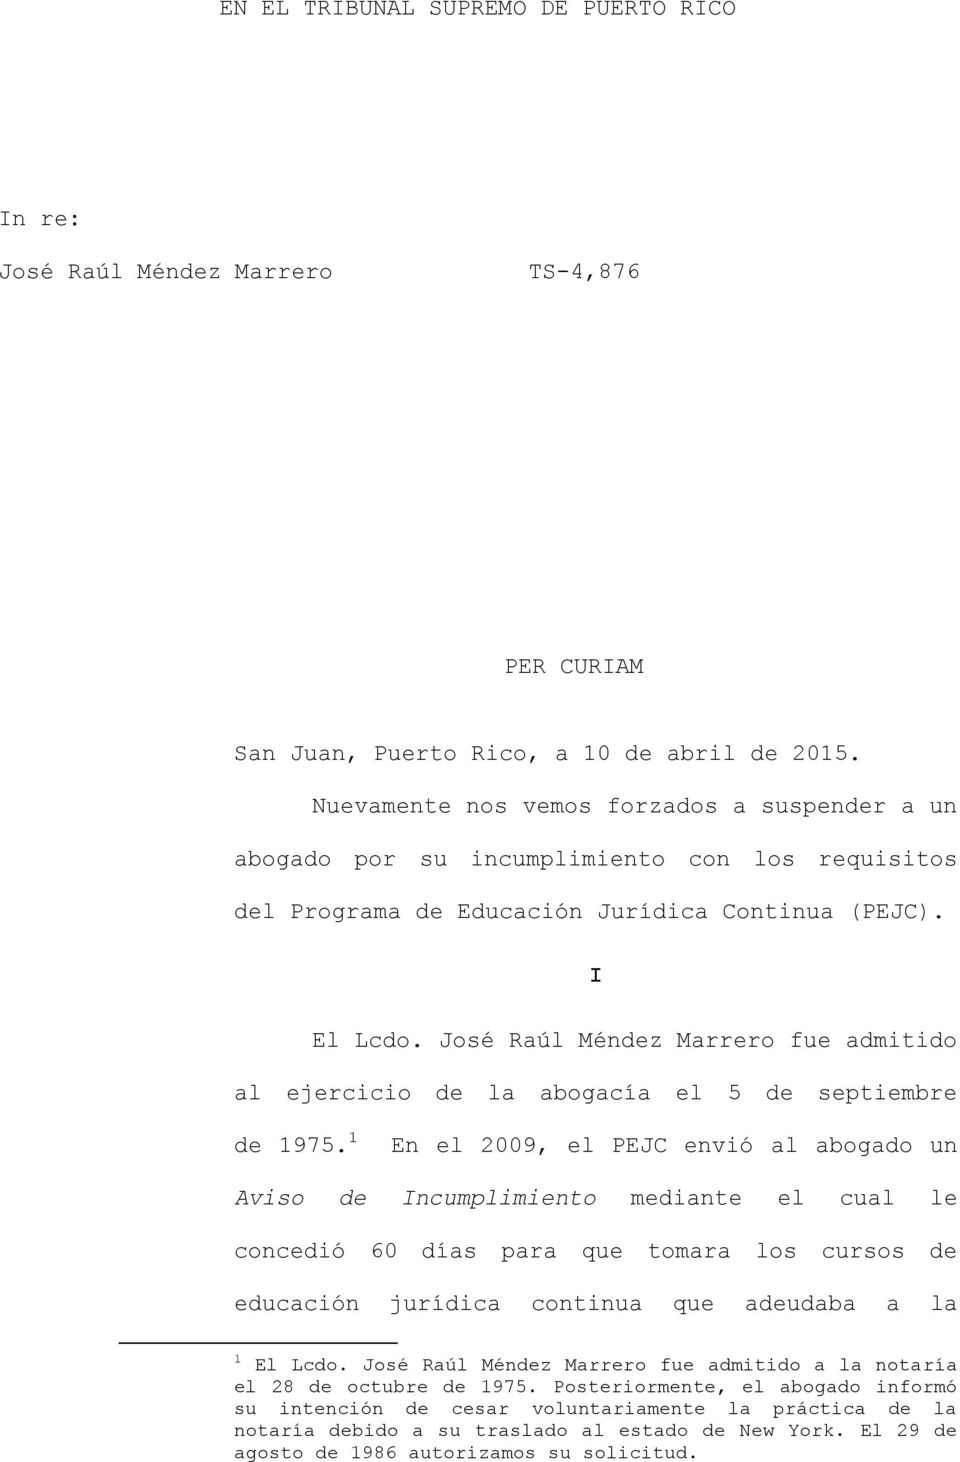 José Raúl Méndez Marrero fue admitido al ejercicio de la abogacía el 5 de septiembre de 1975.